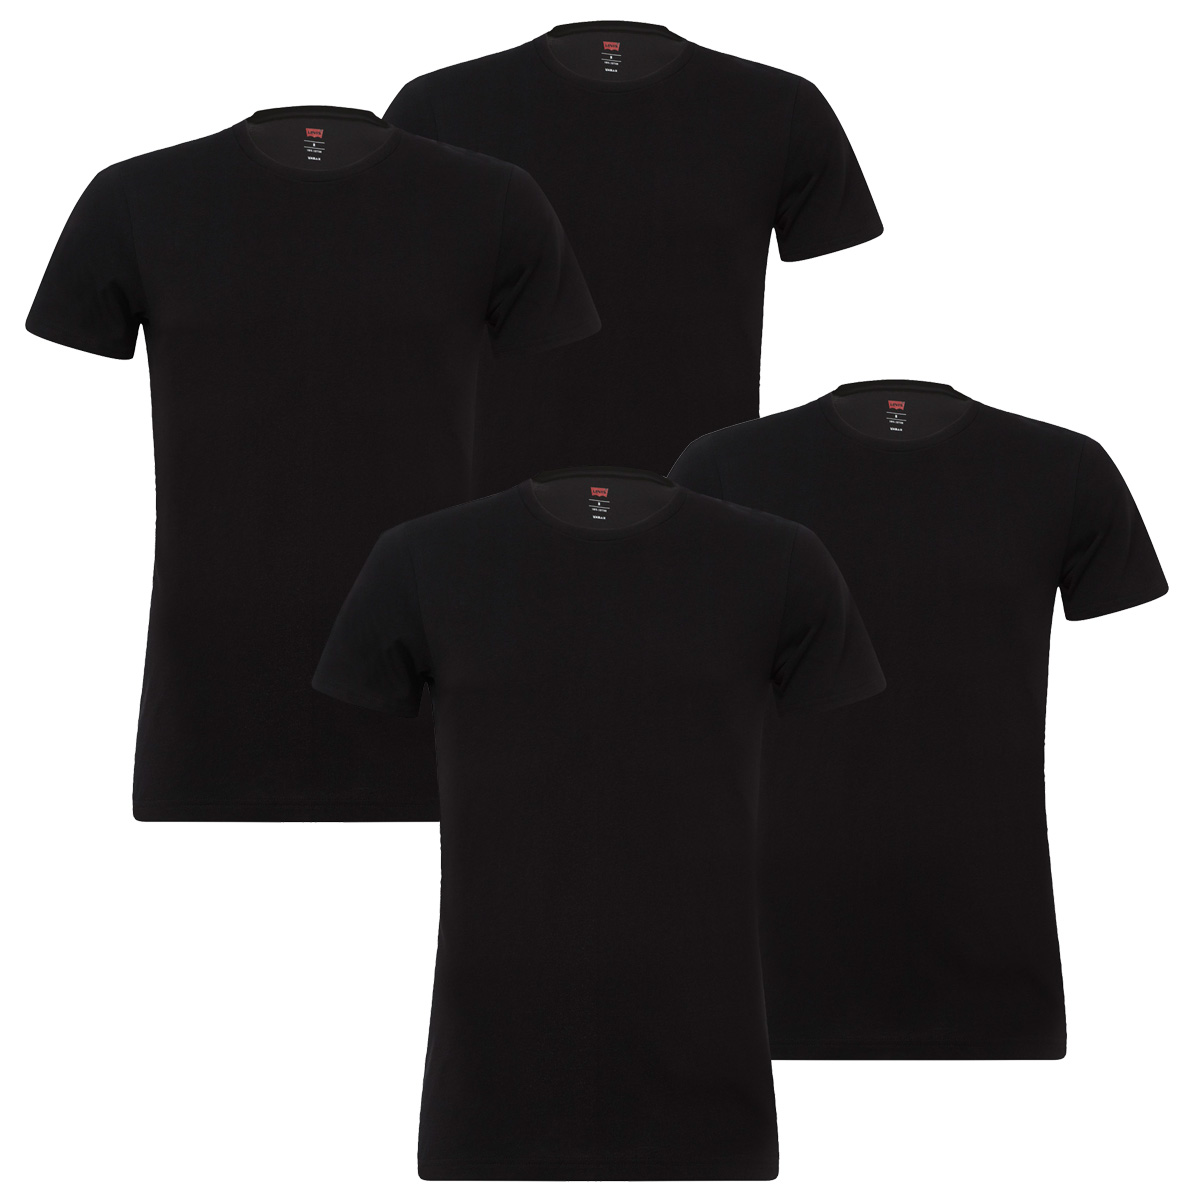 4 er Pack Levis 200SF Crew T-Shirt Men Herren Unterhemd Rundhals, Bekleidungsgröße:XL, Farbe:884 - Jet Black